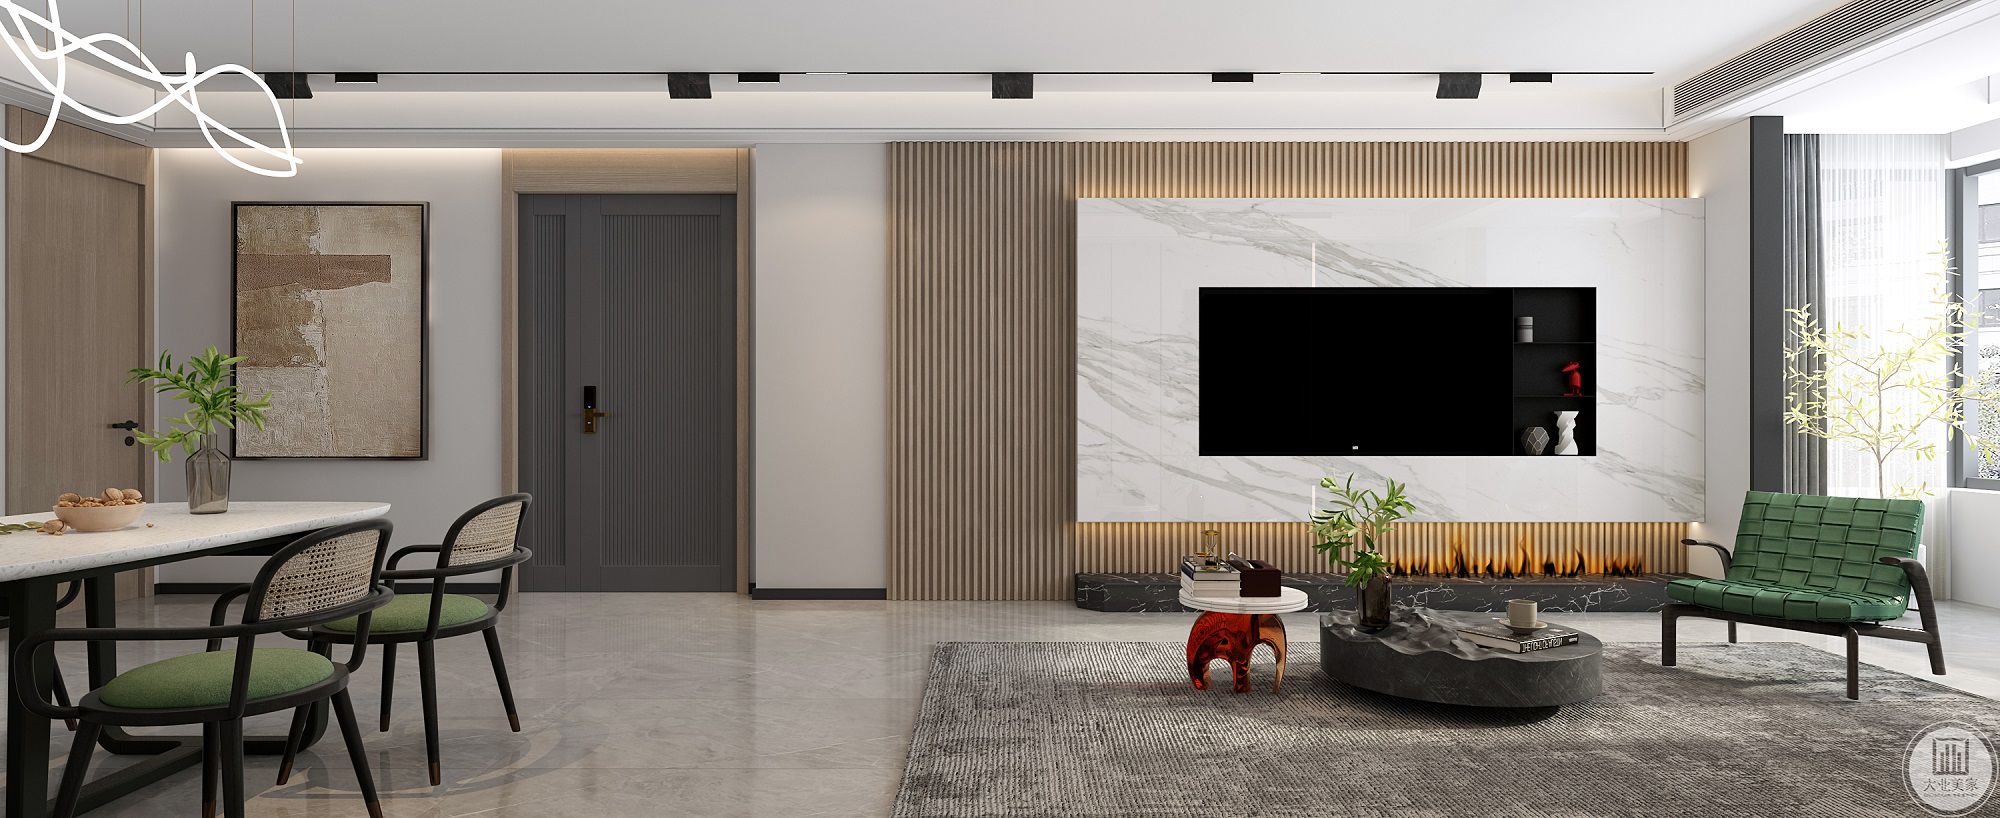 入户至客厅电视背景非常连贯整体，原木墙板和隐形门顺延开来，延至电视背景才有了局部色彩、材质的变化和丰富。